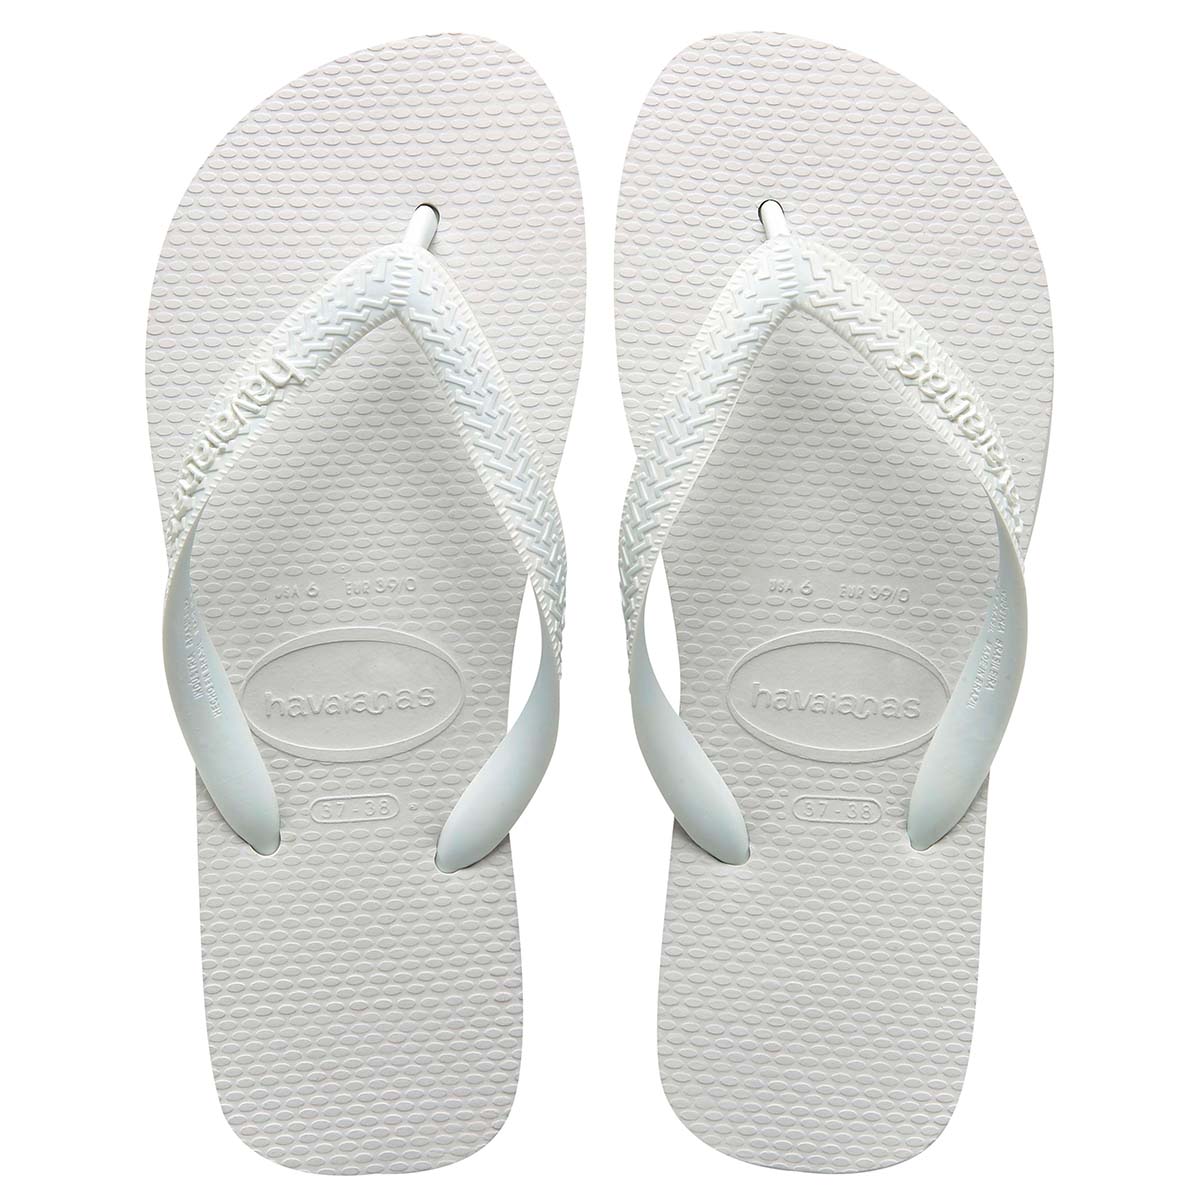 Havaianas Top Unisex Erwachsene Sandalen Zehentrenner Badelatschen 4000029 Weiß